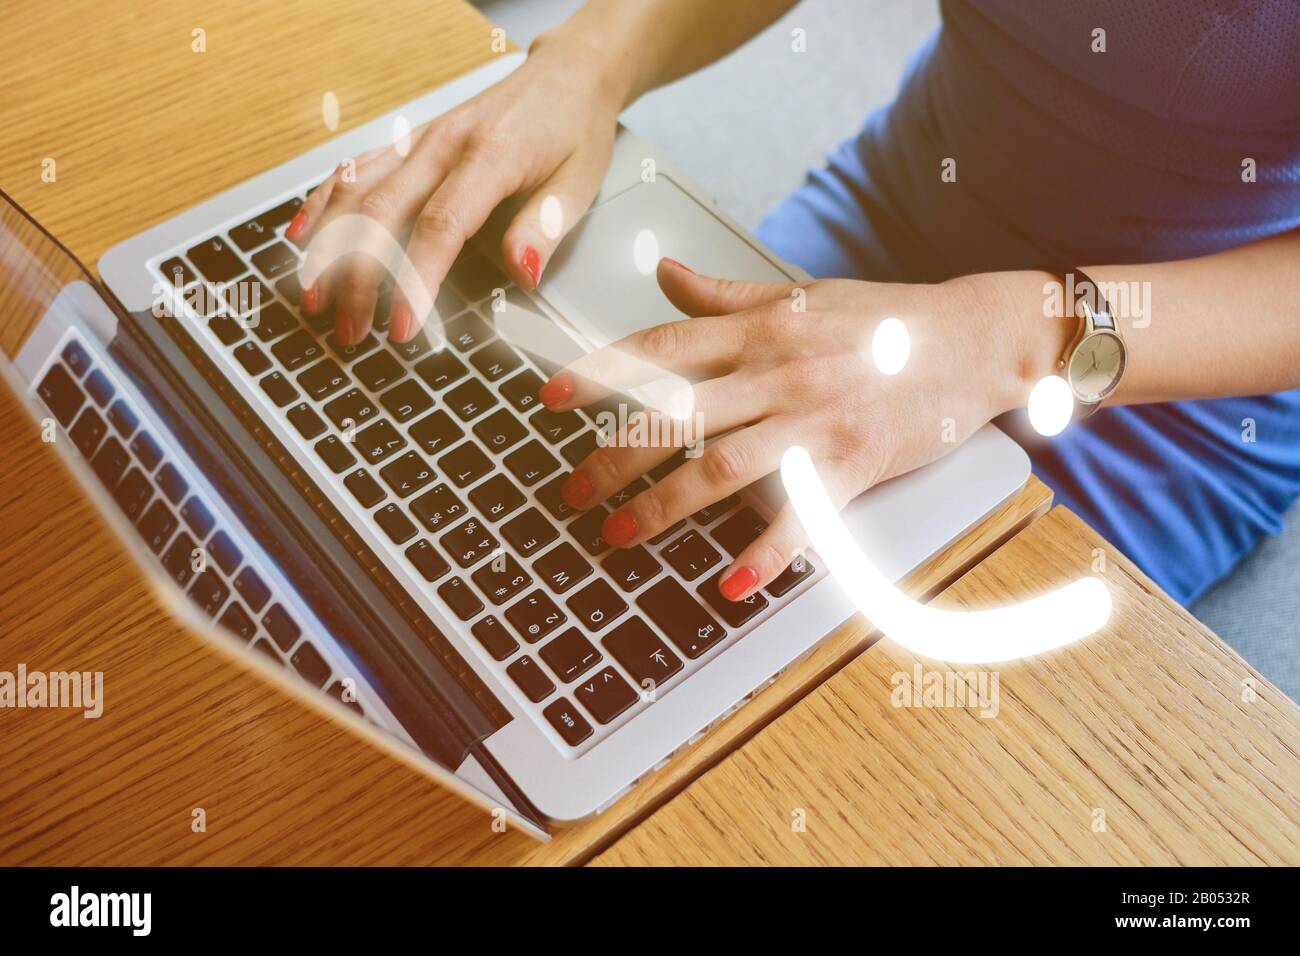 Una ragazza in un abito blu si siede in un caffè e mette una valutazione sulla risorsa del Internet. Emoticon astratte con diversi stati d'animo - cattivo, neutro, buono su un Foto Stock